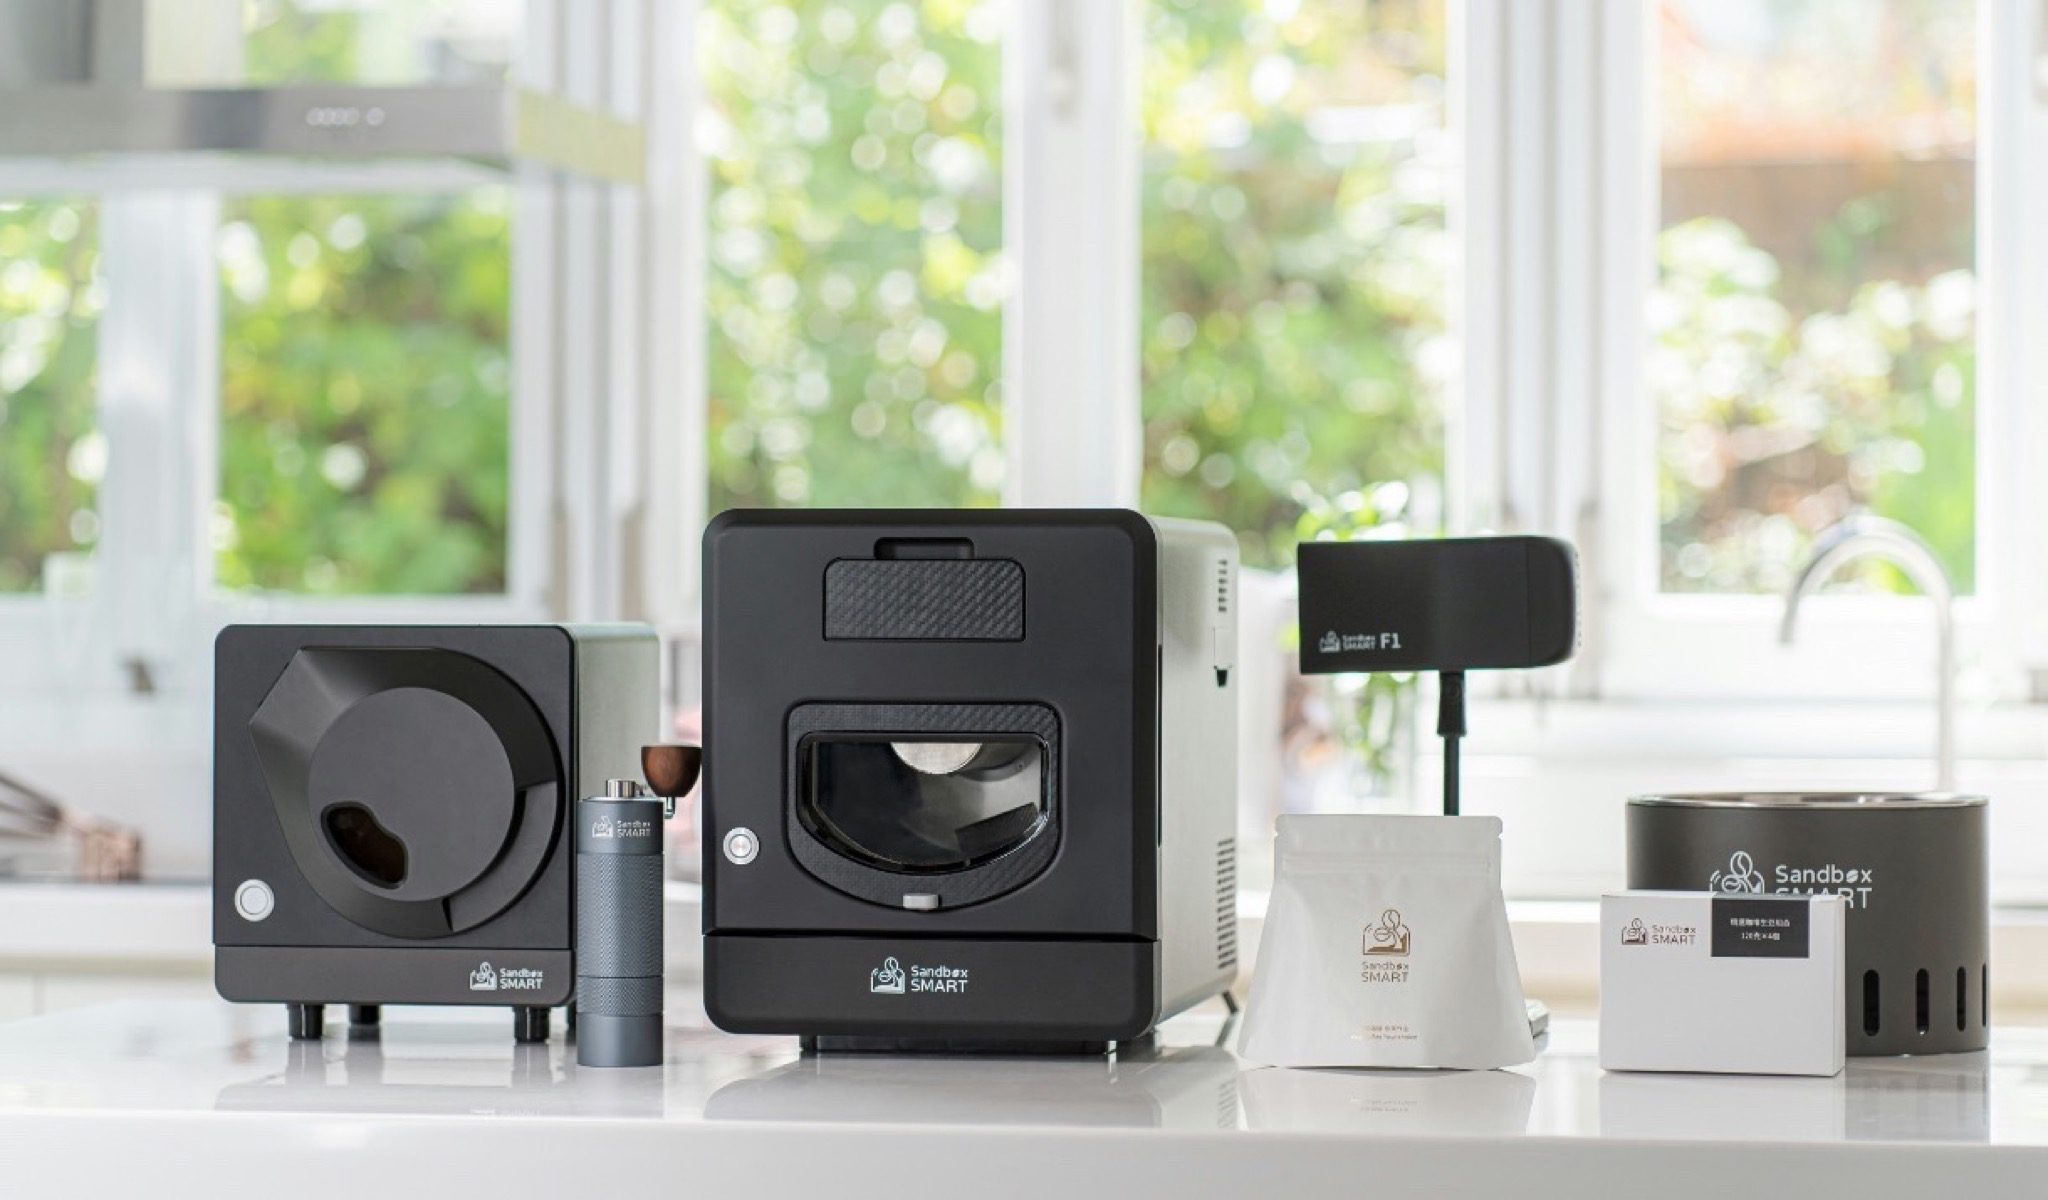 Sandbox Smart R2 vă permite să prăjiți boabele de cafea ca un real barista, de acasă